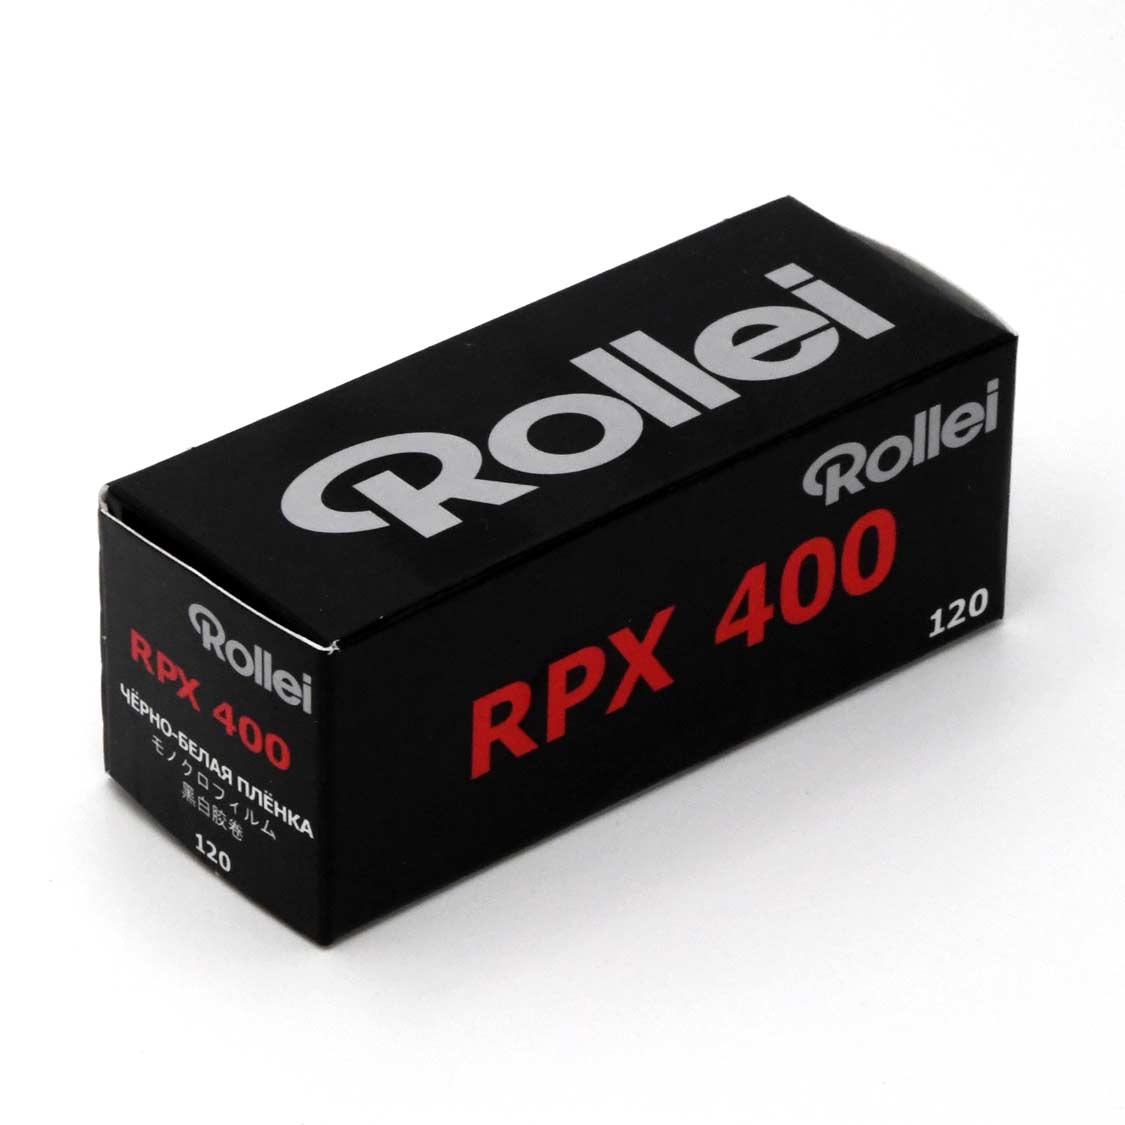 Rollei RPX 400 120 Film